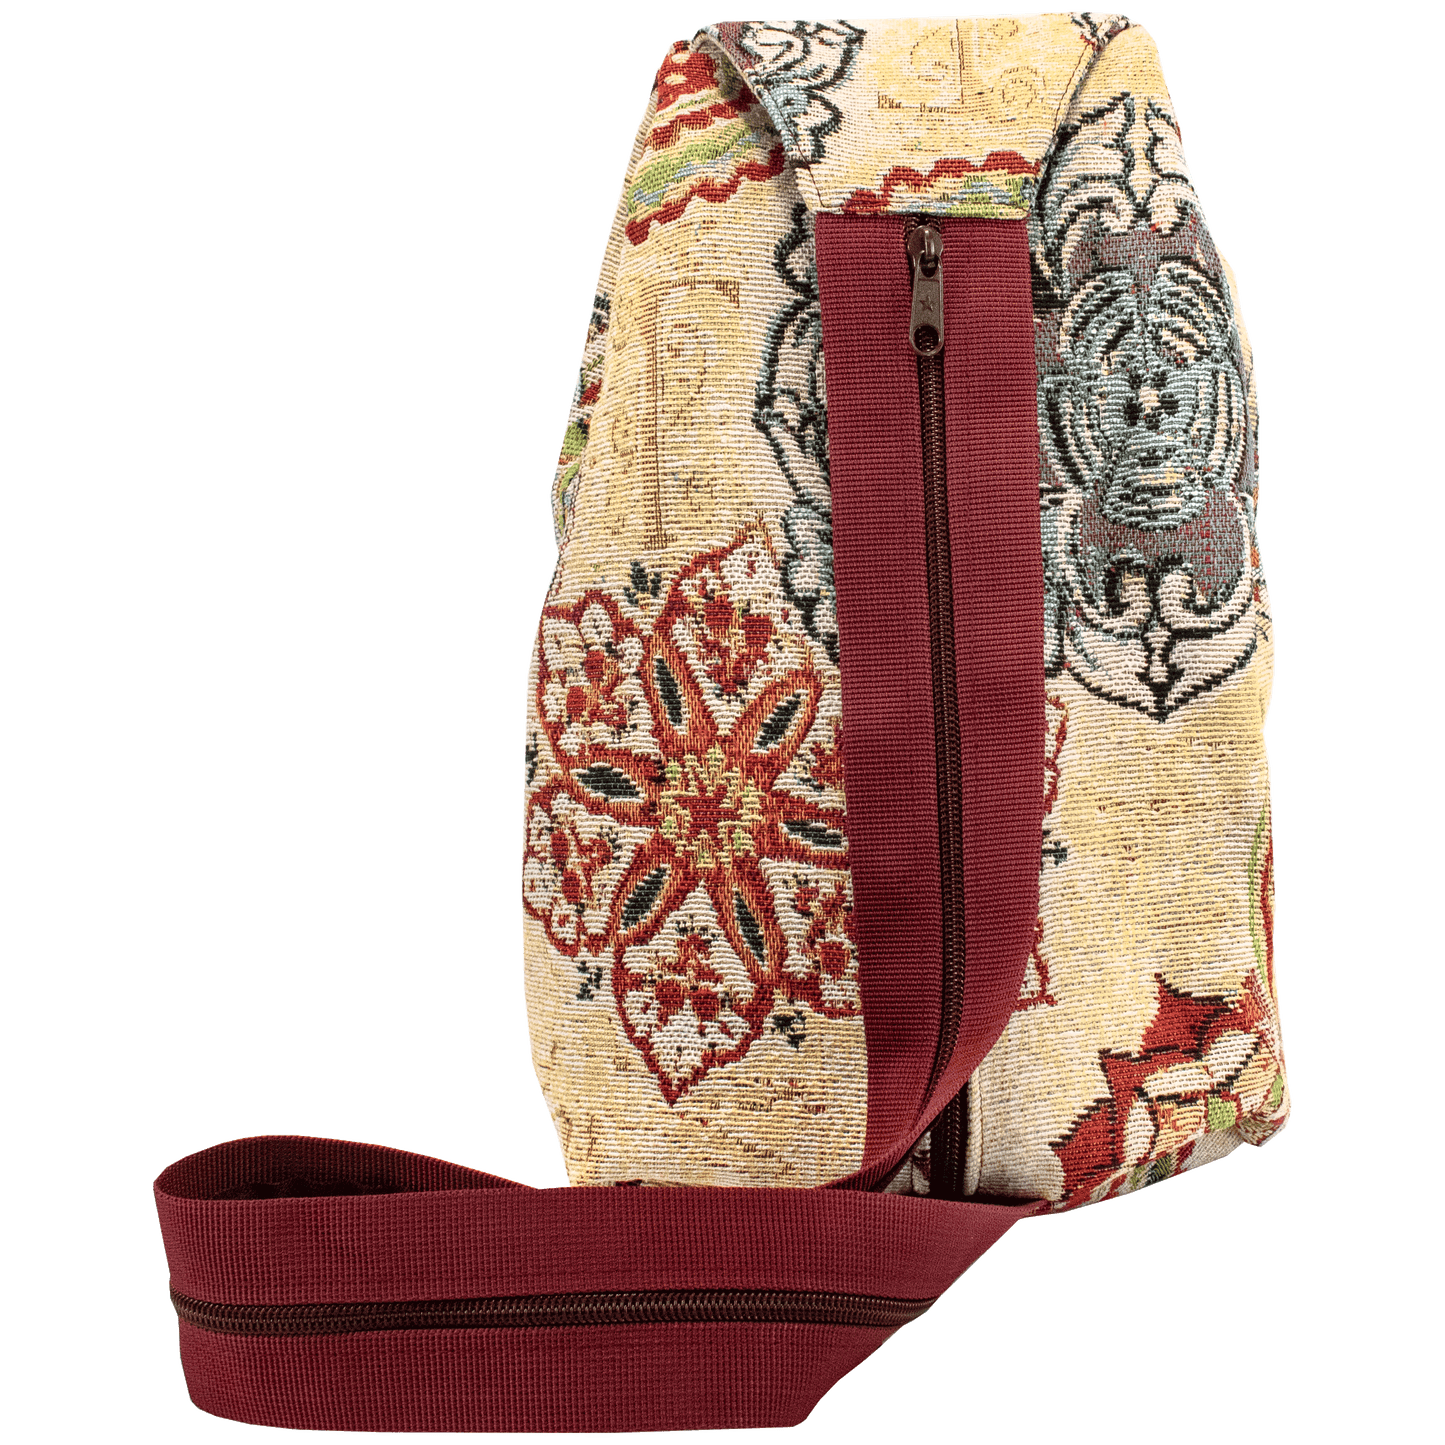 Rania Backpack/Shoulder Bag - Large (Various Patterns)